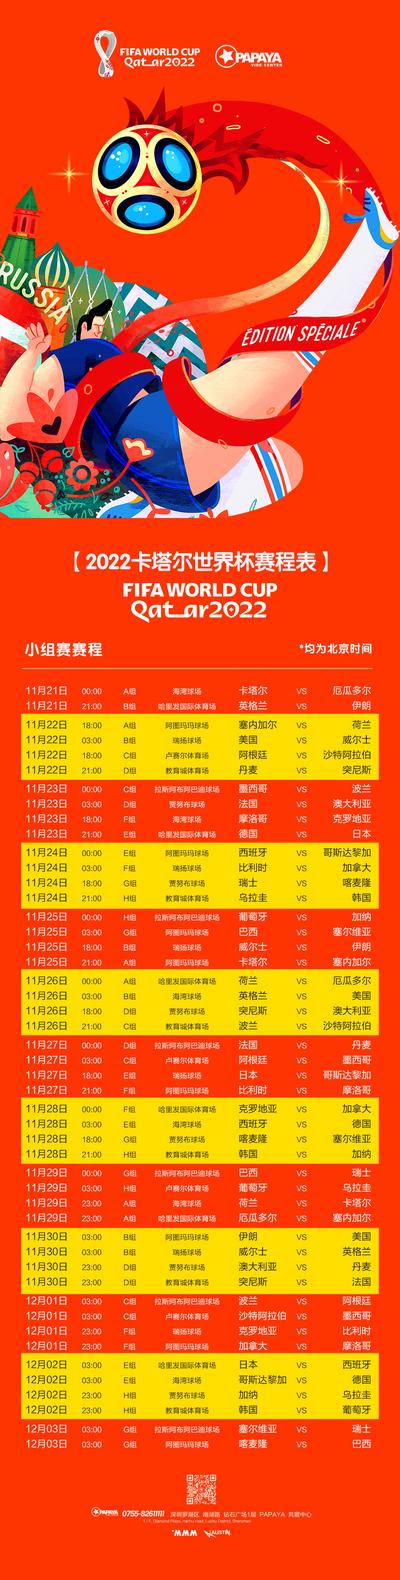 南门网 海报 长图 2022 卡塔尔 世界杯 足球 赛事 时间表